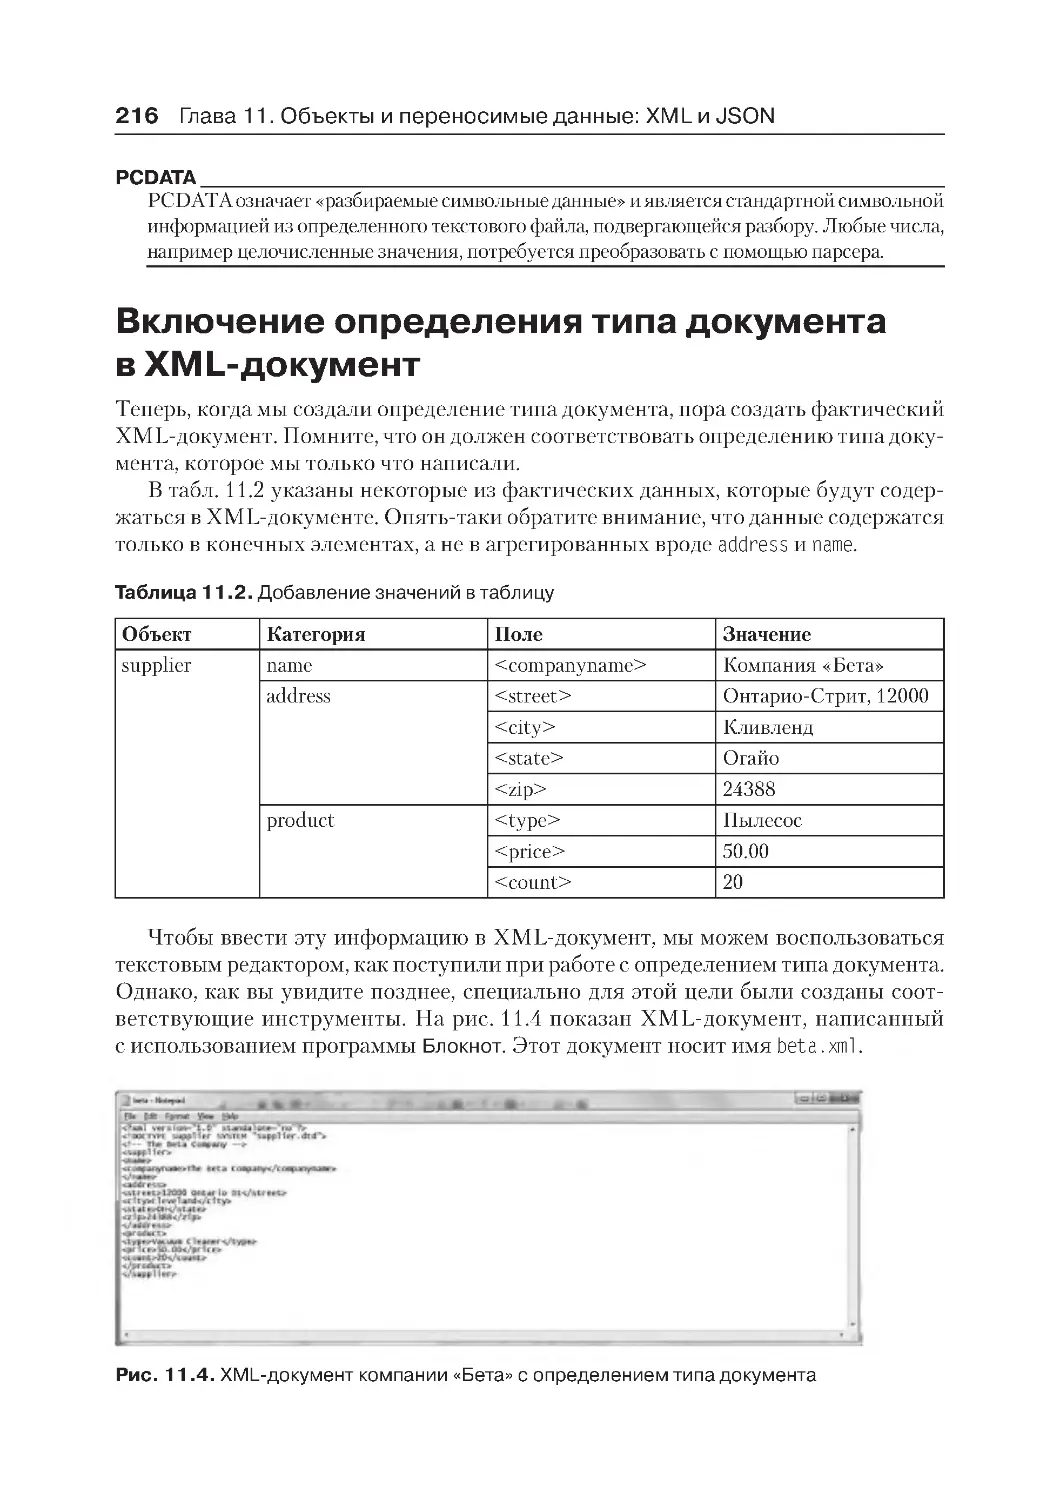 ﻿Включение определения типа документа в XML-докумен